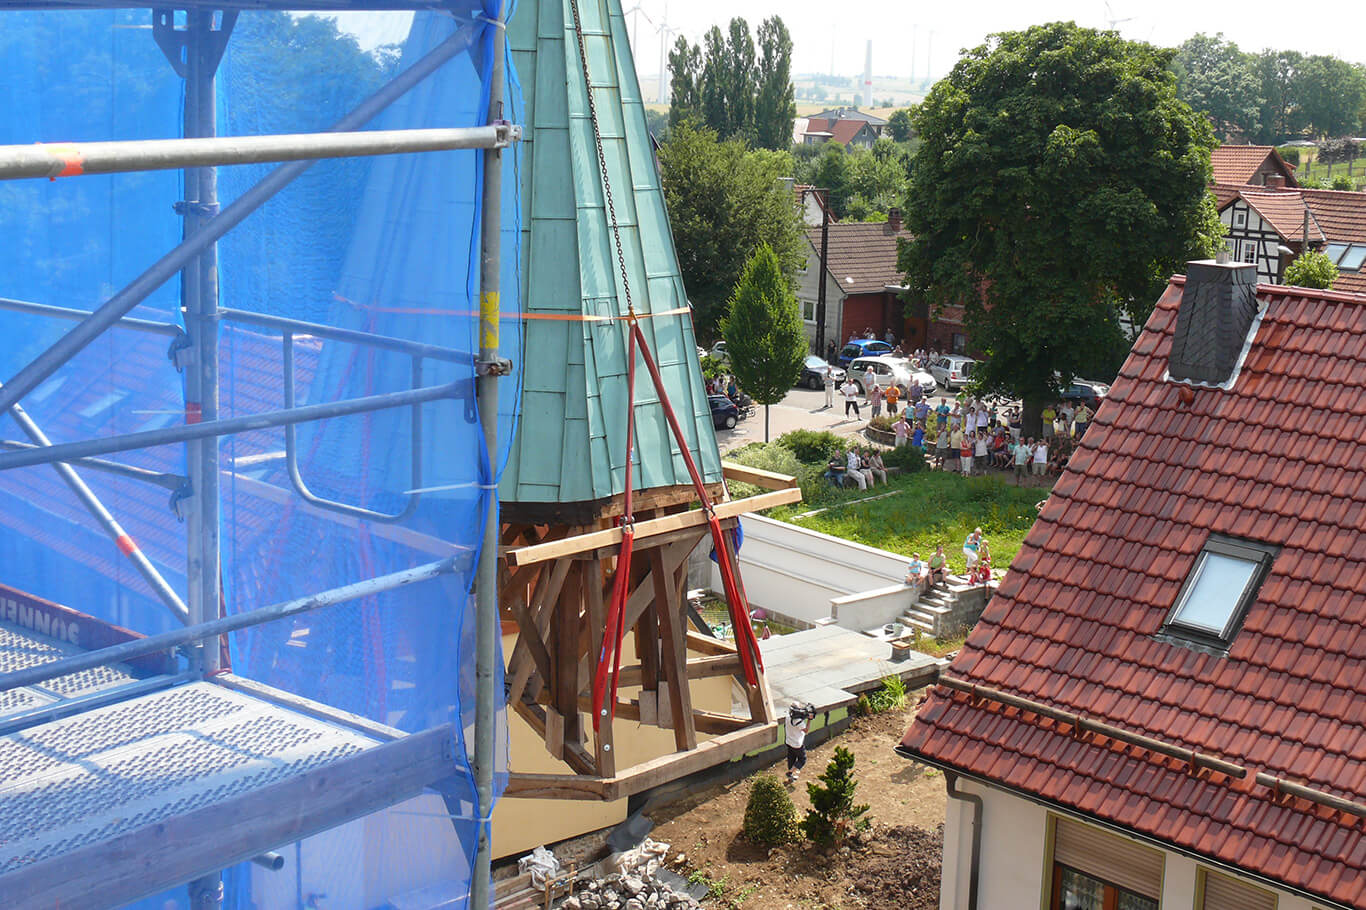 Detailansicht des durch einen Kran angehobenen neuen Turmhelms für den Kirchturm Küllstedt